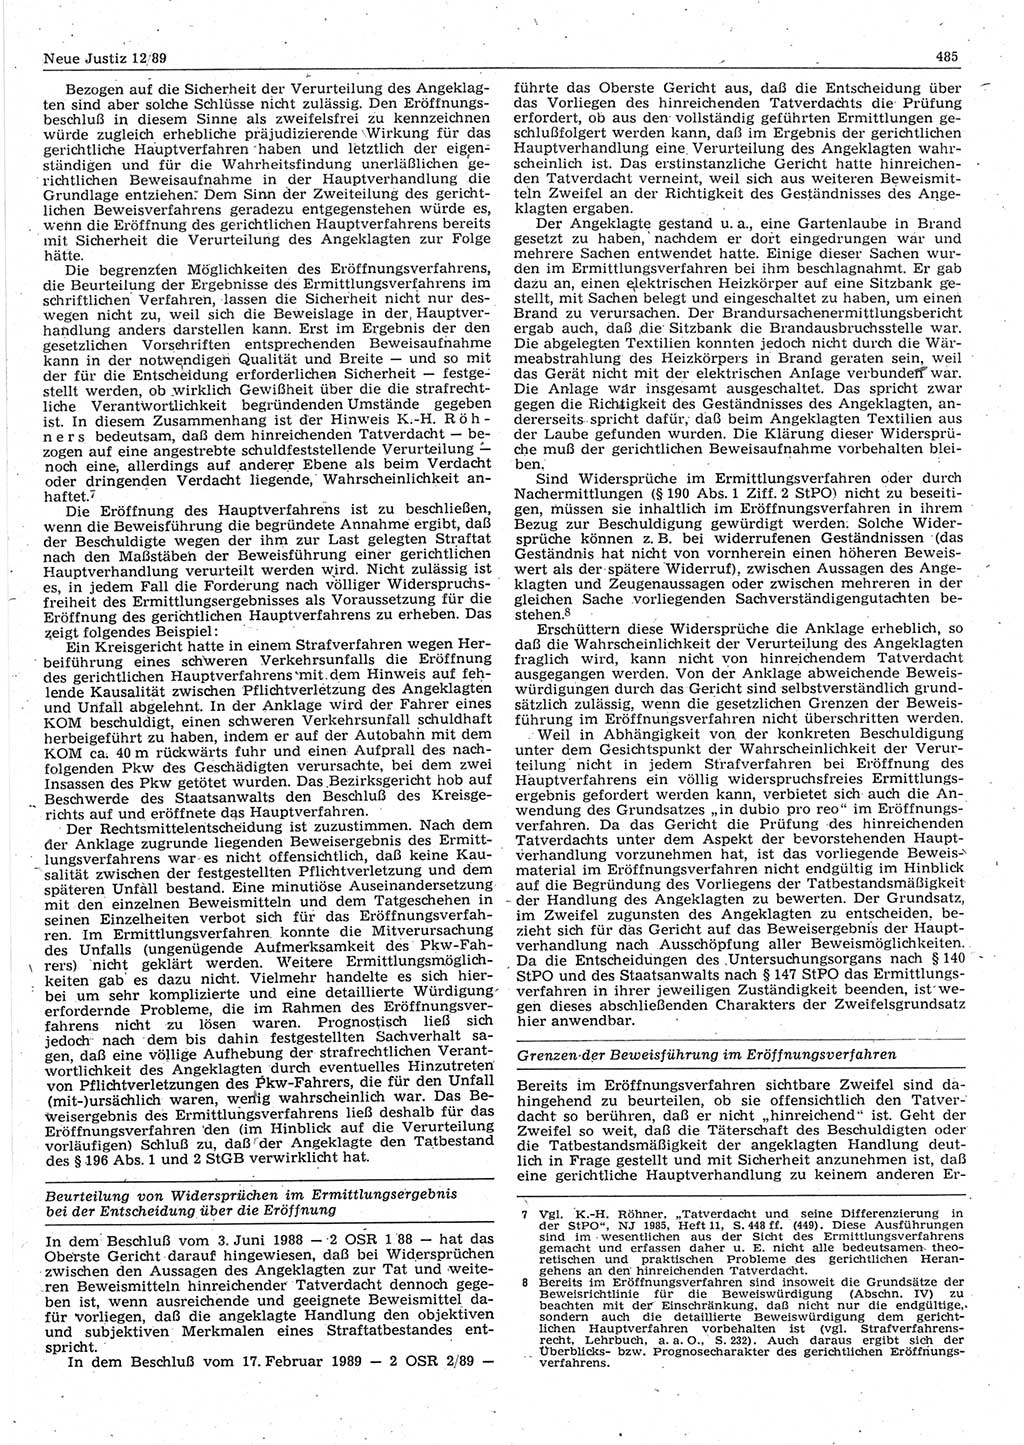 Neue Justiz (NJ), Zeitschrift für sozialistisches Recht und Gesetzlichkeit [Deutsche Demokratische Republik (DDR)], 43. Jahrgang 1989, Seite 485 (NJ DDR 1989, S. 485)